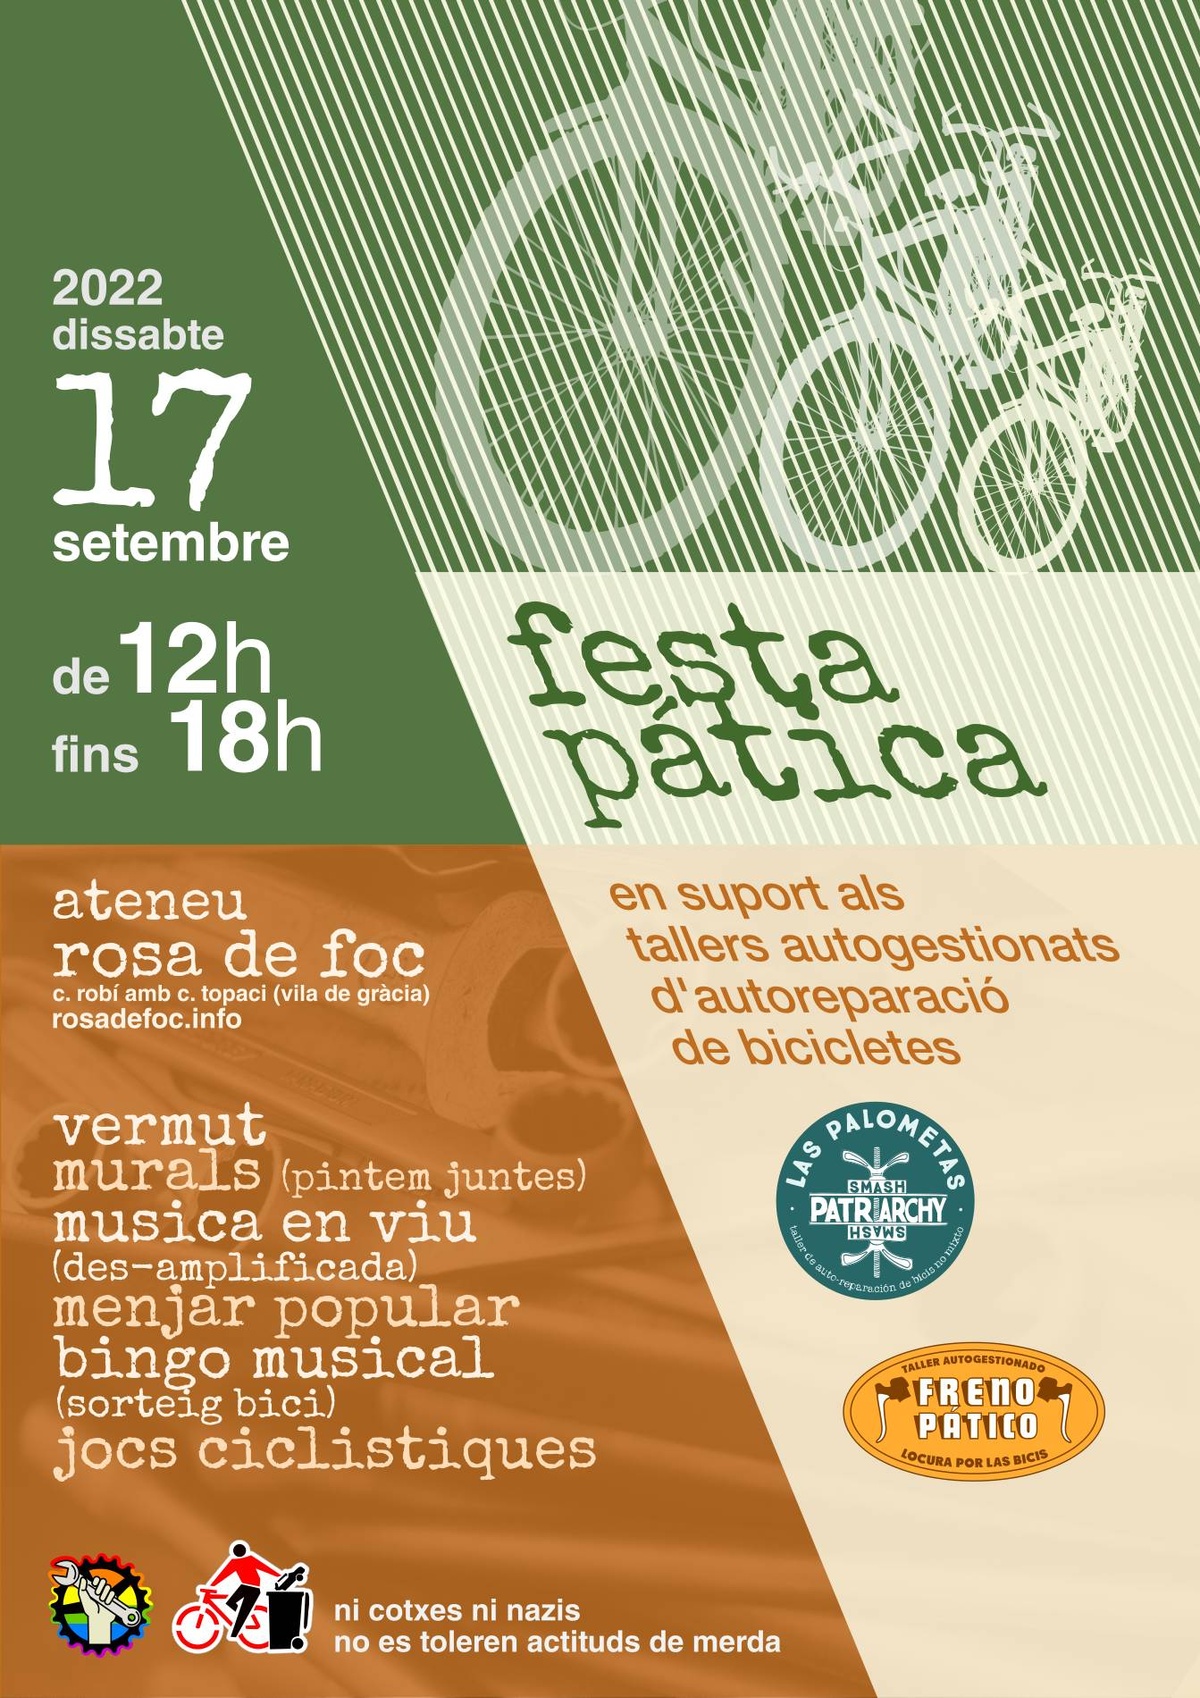 Fiesta pática 17 sept - 12h - ateneu rosa de foc - talleres de bici freno-pático y las palometas